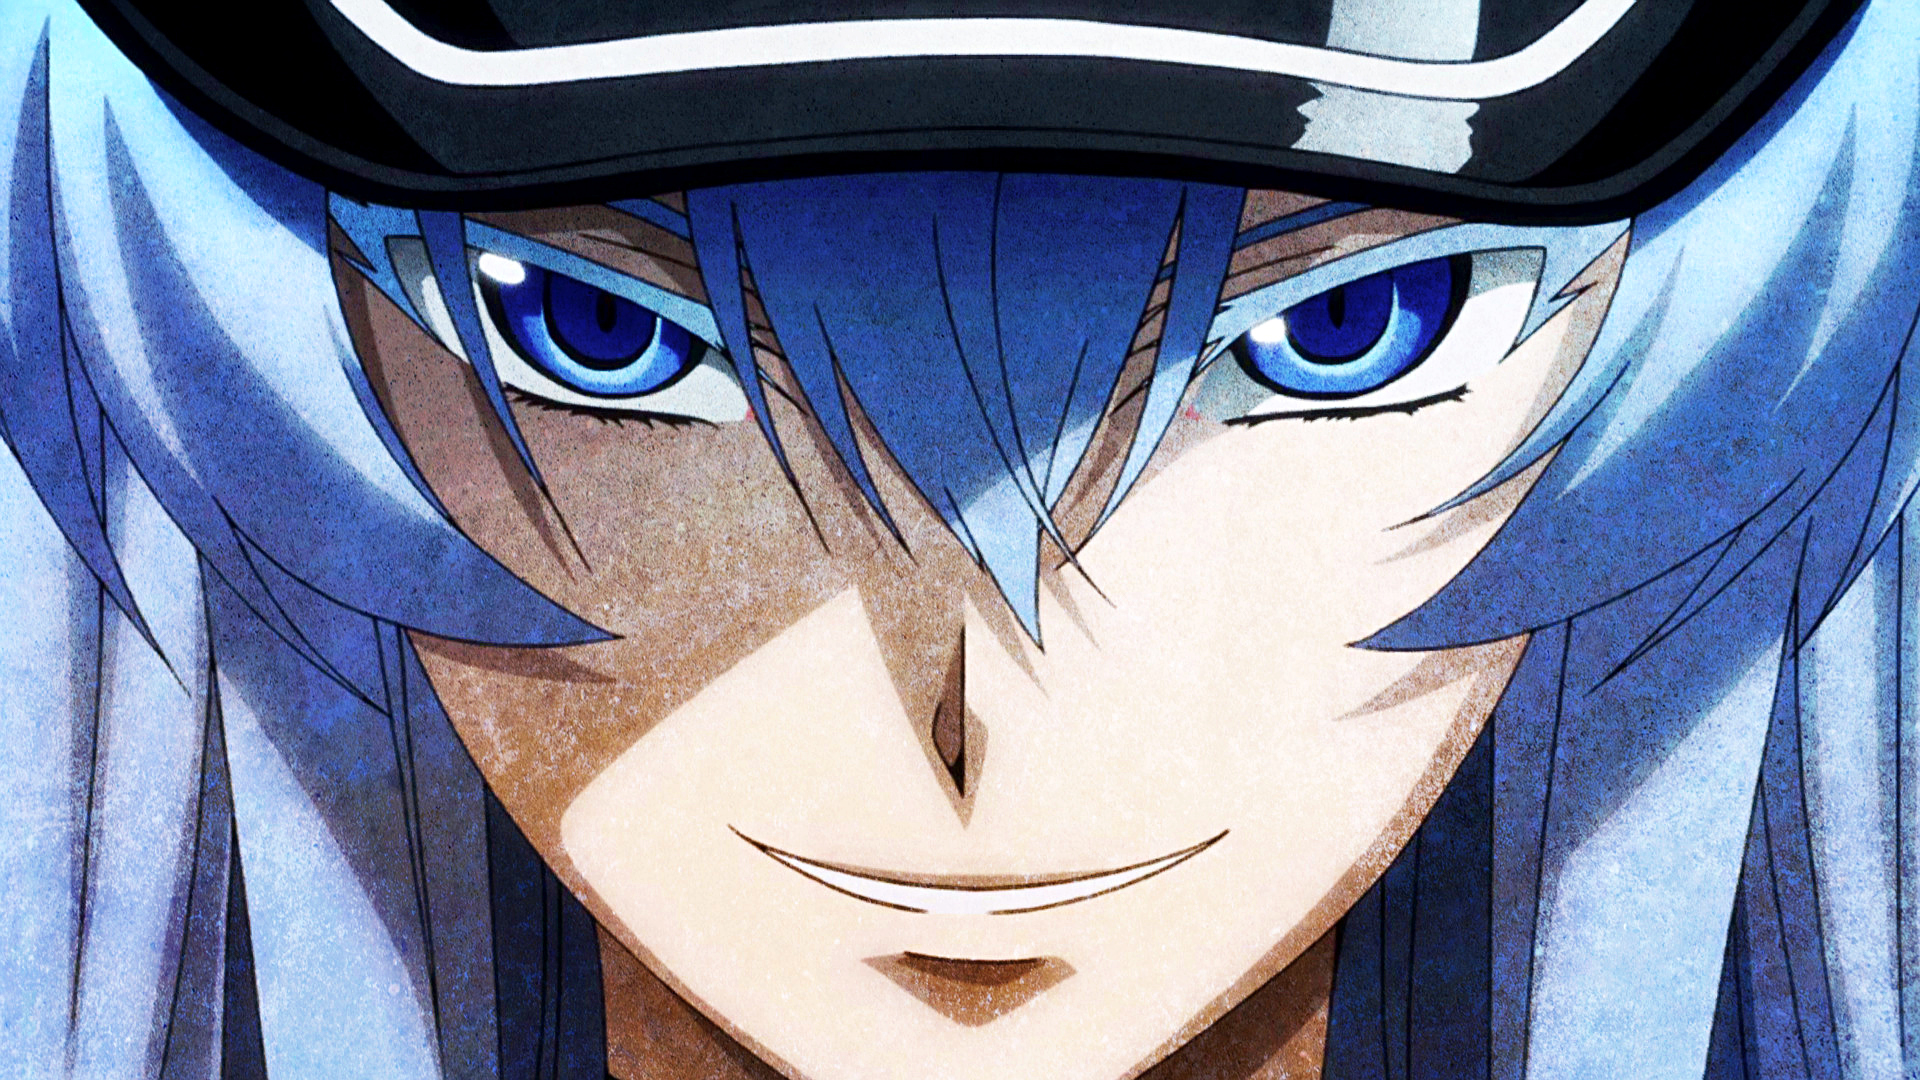 Anime 1920x1080 Akame ga Kill! Esdeath (Akame Ga Kill!) anime blue eyes blue hair face closeup hair in face looking at viewer